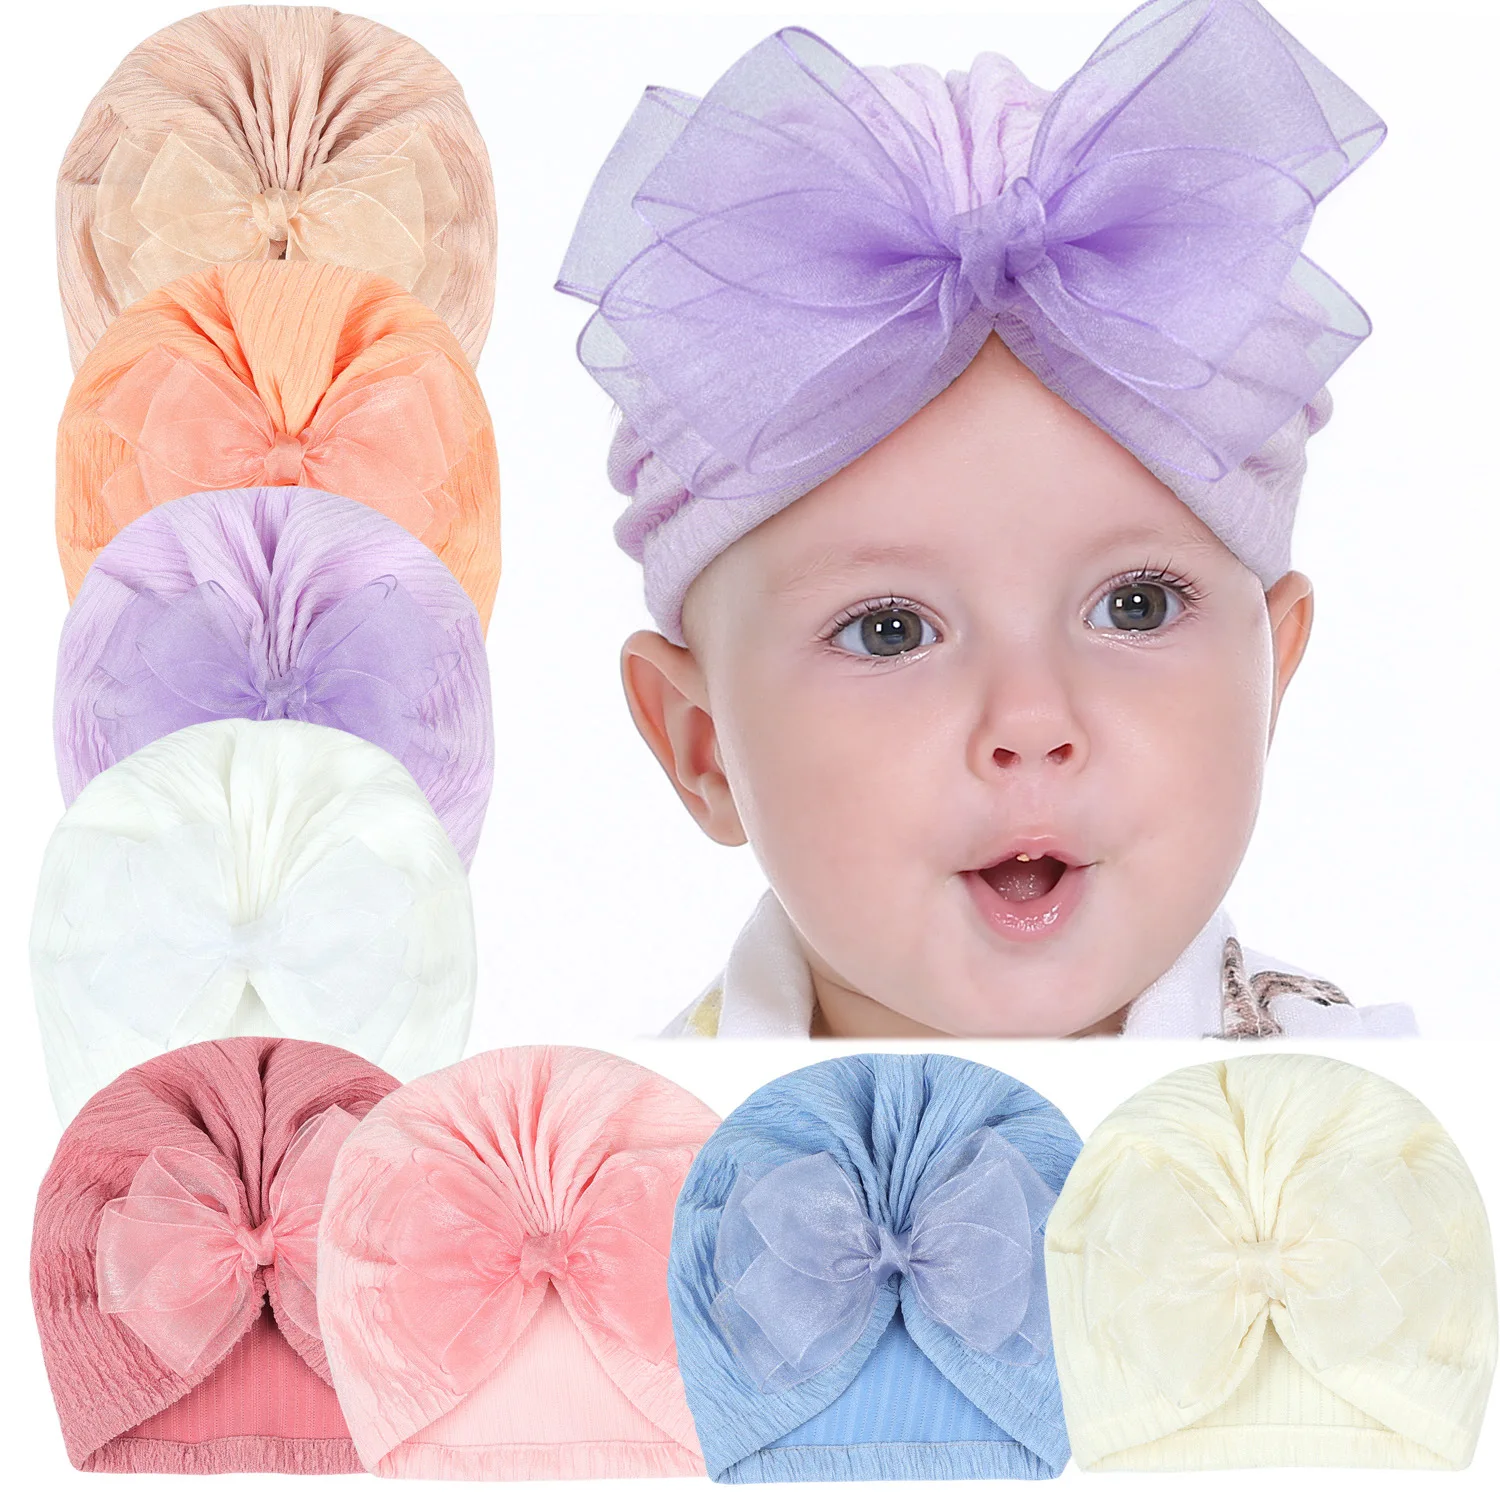 عمامة قطنية مضلعة مع قوس دانتيل للطفل ، أغطية رأس للطفل الصغير ، قبعة هندية للأطفال ، قبعات قبعة صغيرة محبوكة للفتيات والفتيان